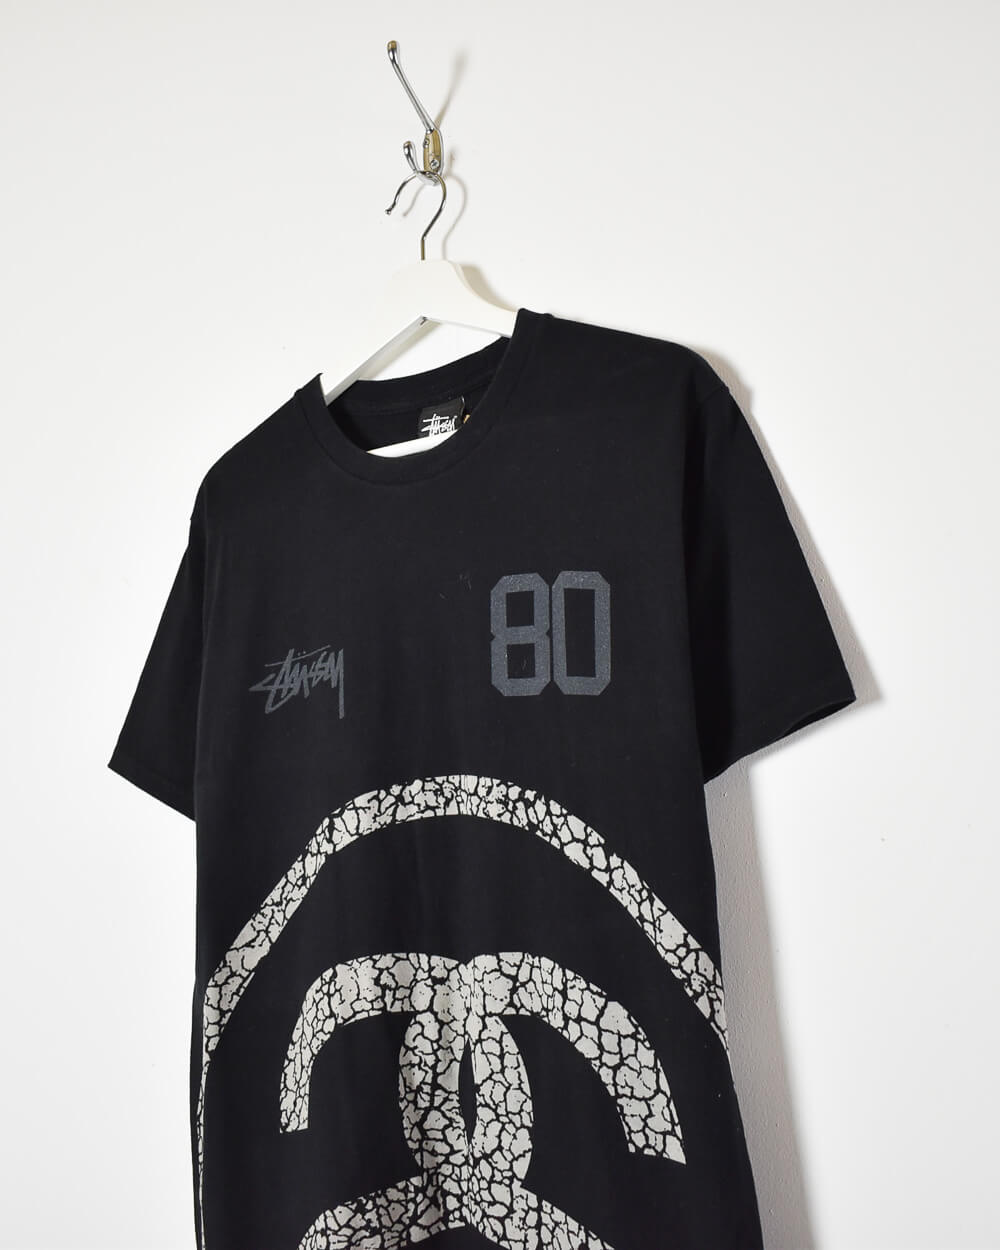 Black Stussy 80 T-Shirt - Medium